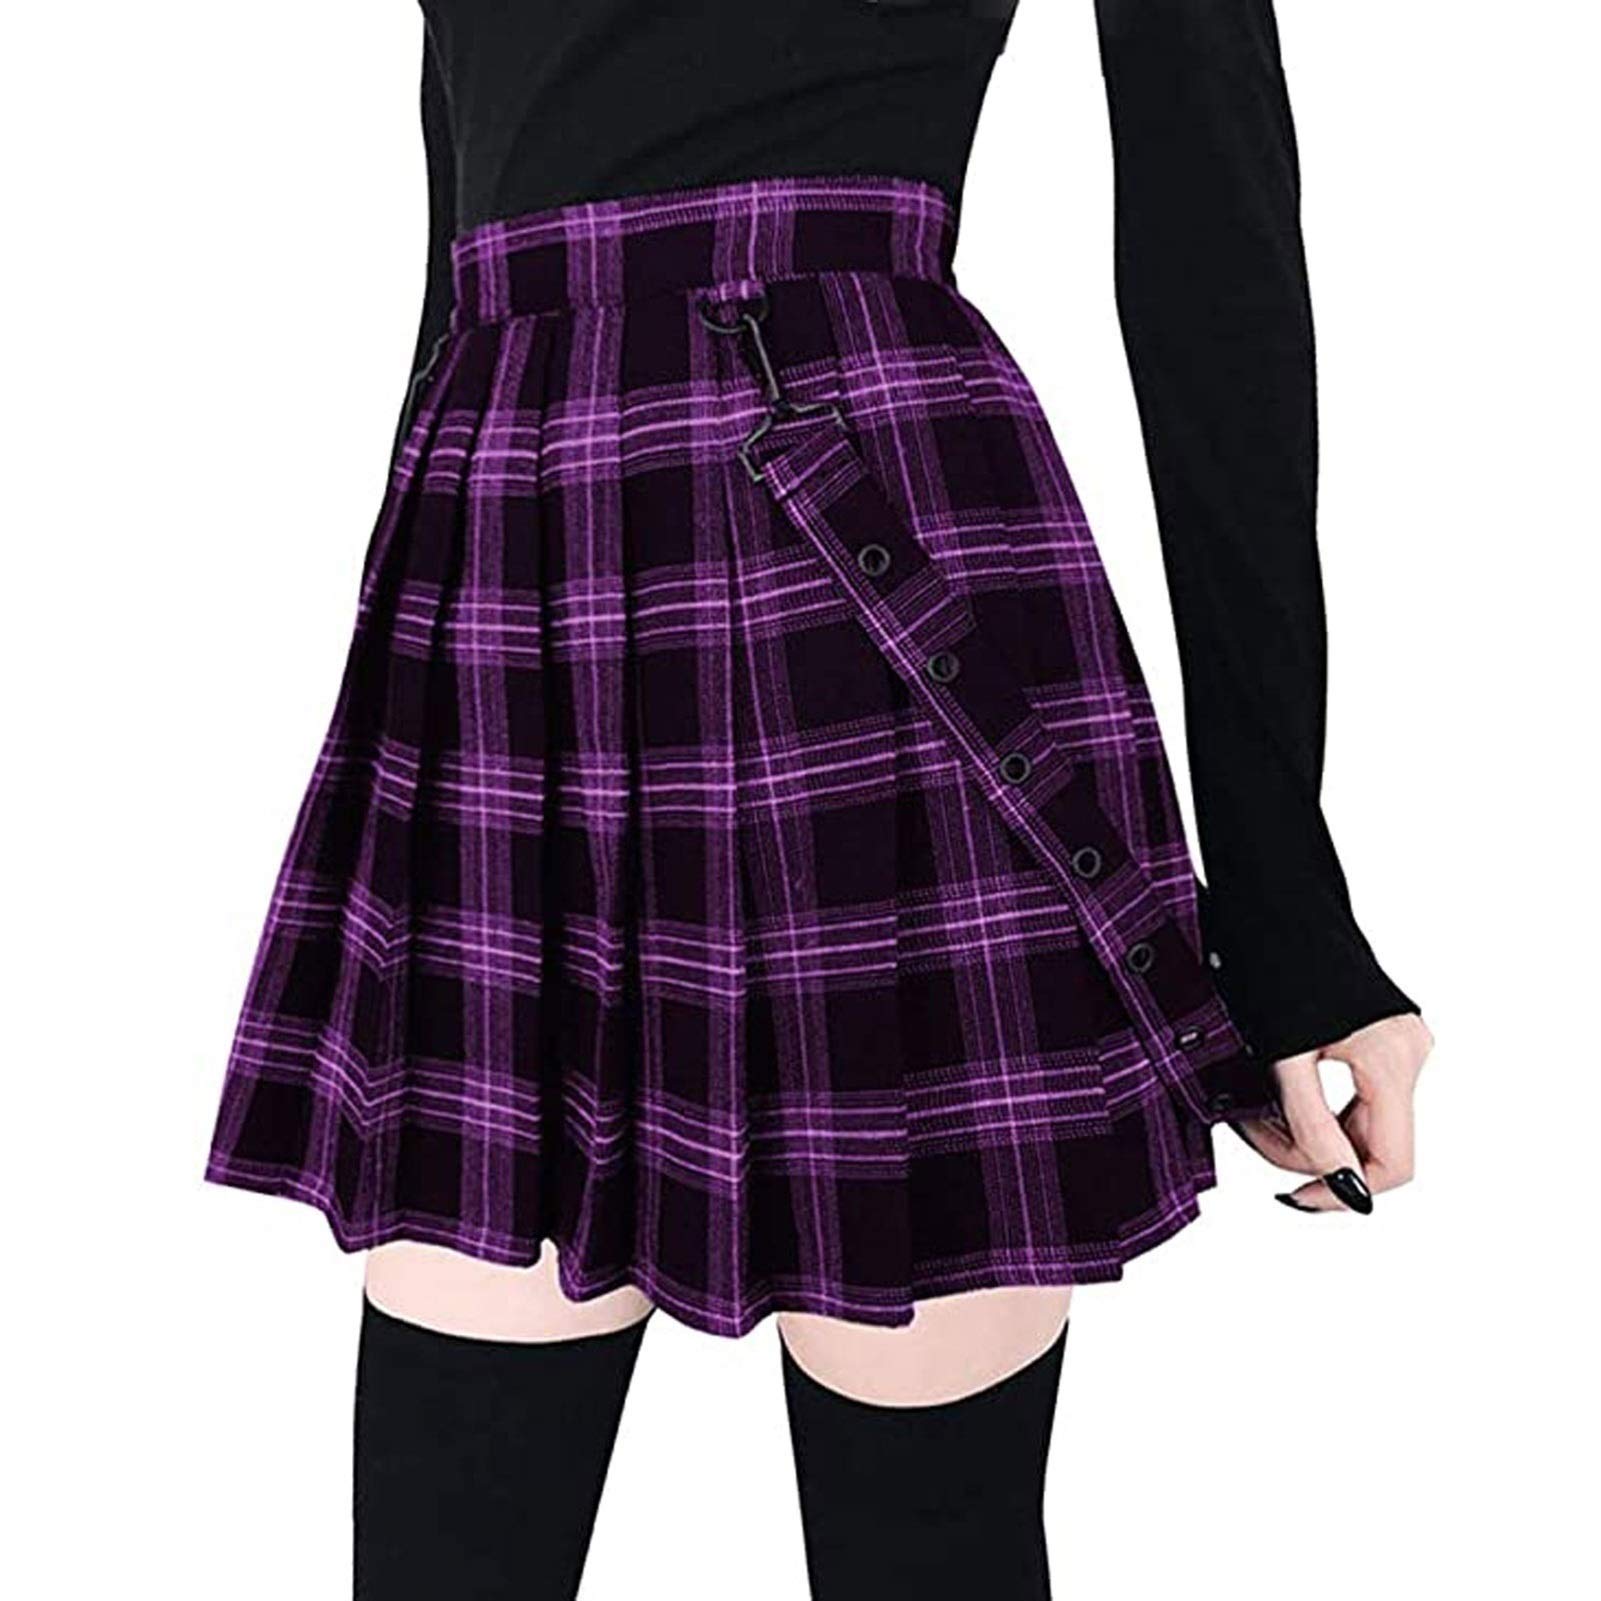 Damen Kilt Rock Kariert Schottischer Kilt Tartan Rot Blau Faltenrock mit Kette Minirock Hohe Taille Kurz Skirt Skater Rock (Color : Purple-A, Size : M)